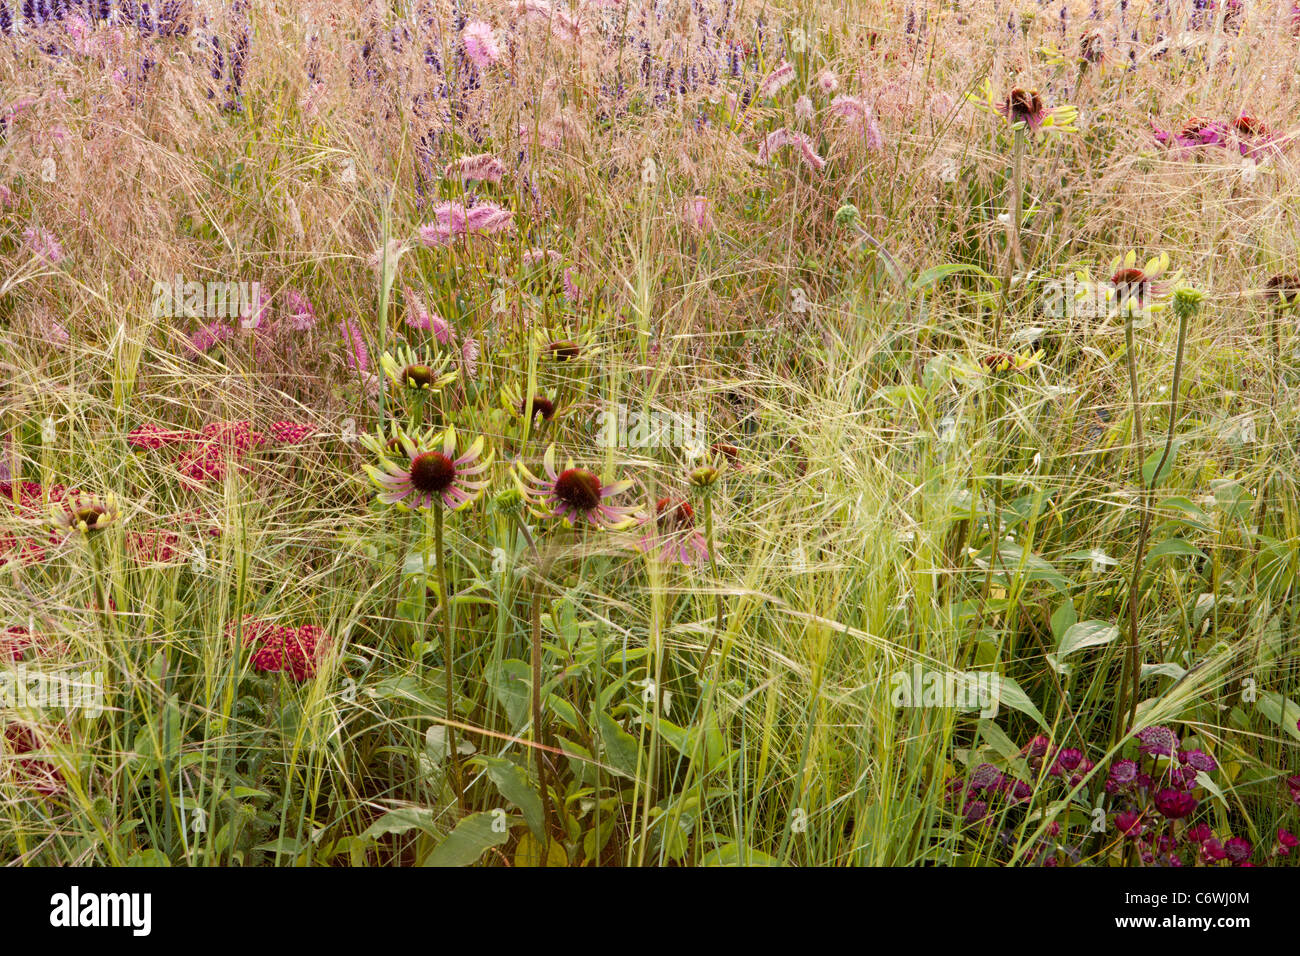 Ein wilder Präriewiesengarten mit Ziergrasgrasen deschampsia stipa und Echinacea achillea sanguisorba Blumen Blume Grenze Sommer UK Stockfoto